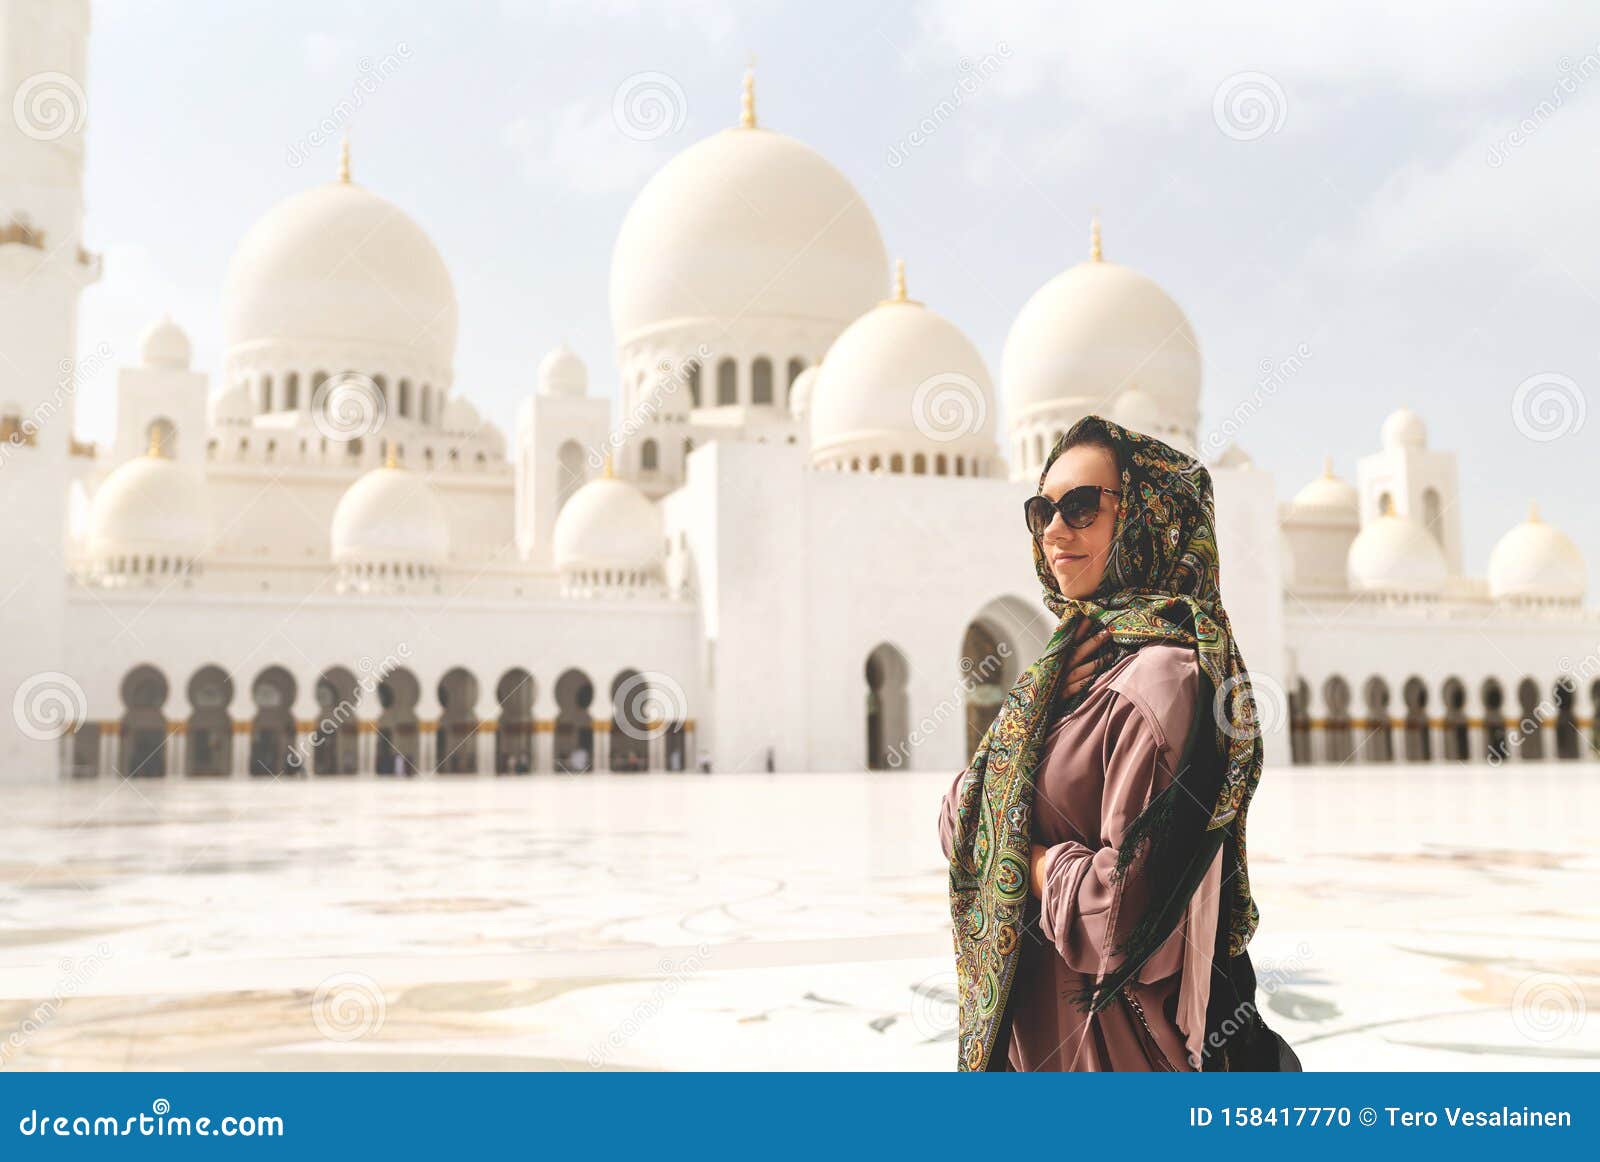 woman tourist in abu dhabi